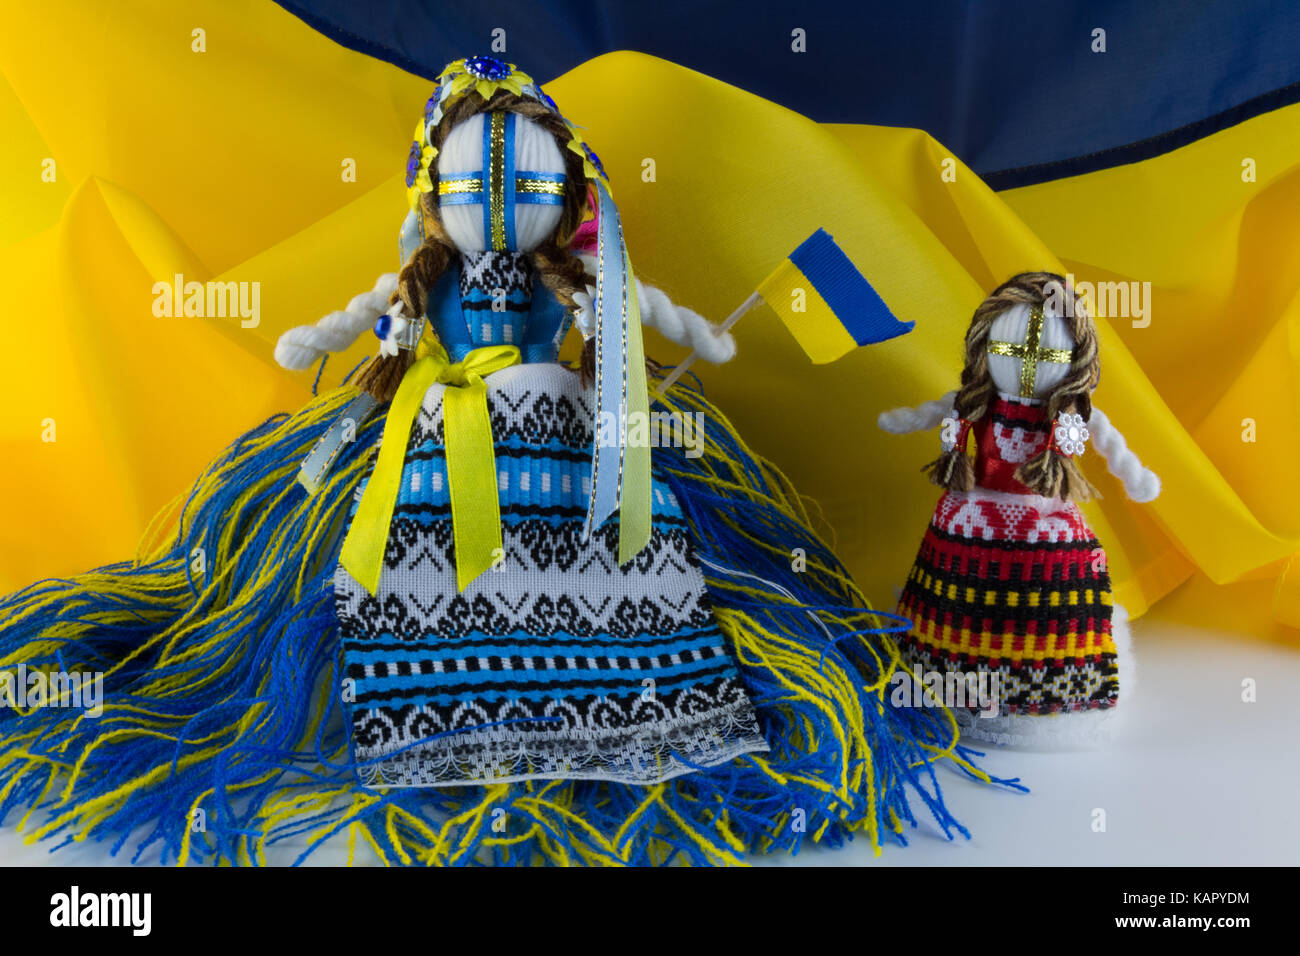 Handmade textill doll, poupées de chiffon à la main motanka sur le fond du drapeau de l'Ukraine. motanka - poupée folklorique ukrainienne la protection de la maison familiale Banque D'Images